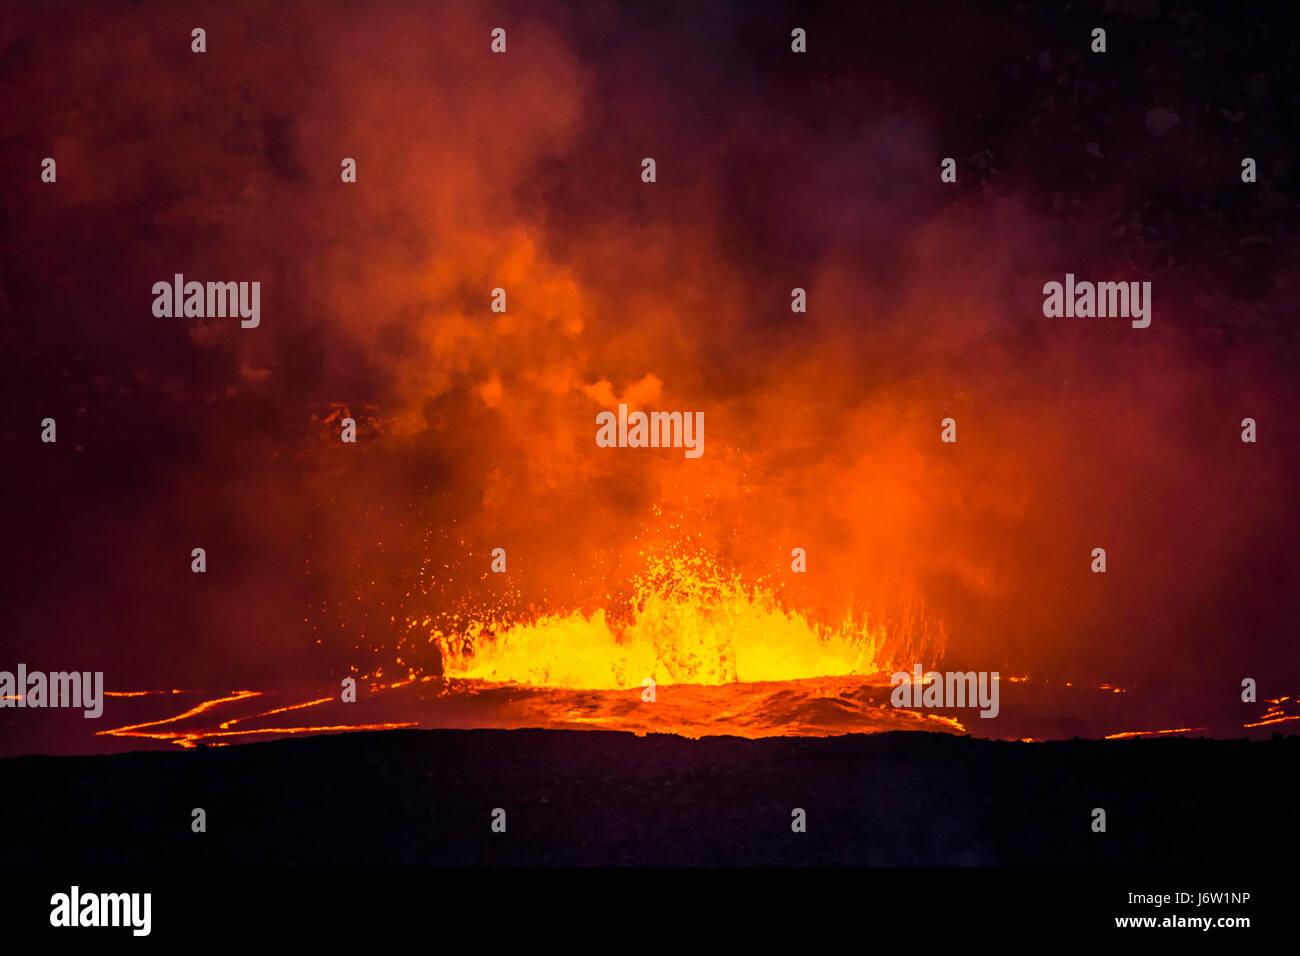 Kochendes, ausbrechender Lava in die Caldera des Vulkans Kilauea schießt Magma in die Luft und erzeugt große Mengen an Dampf aus der heißen Flüssigkeit. Stockfoto